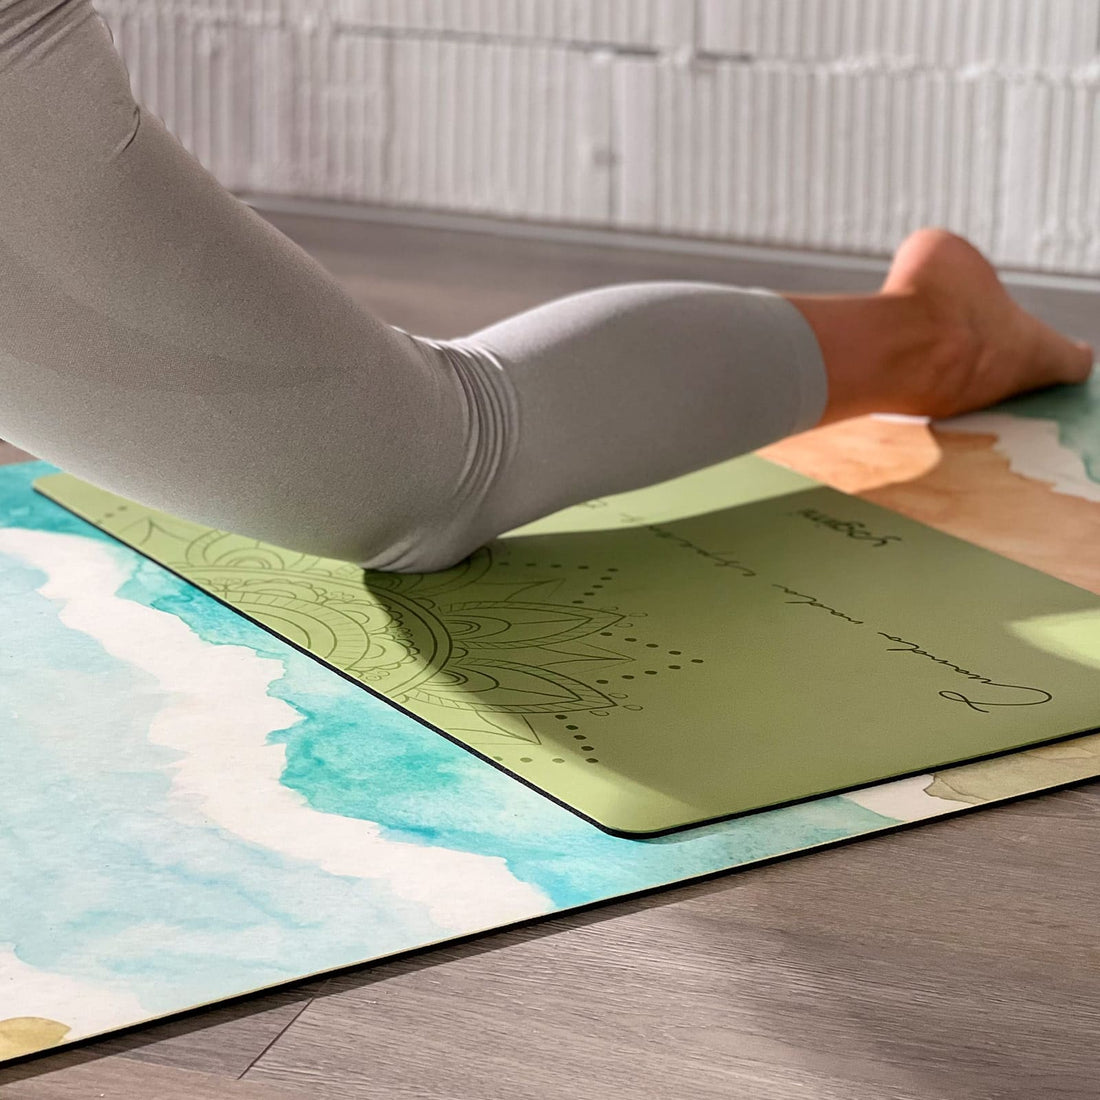 Comprar pad para yoga. Mini esterilla antideslizante en color verde con mandala. Patry Montero Yogimi. 